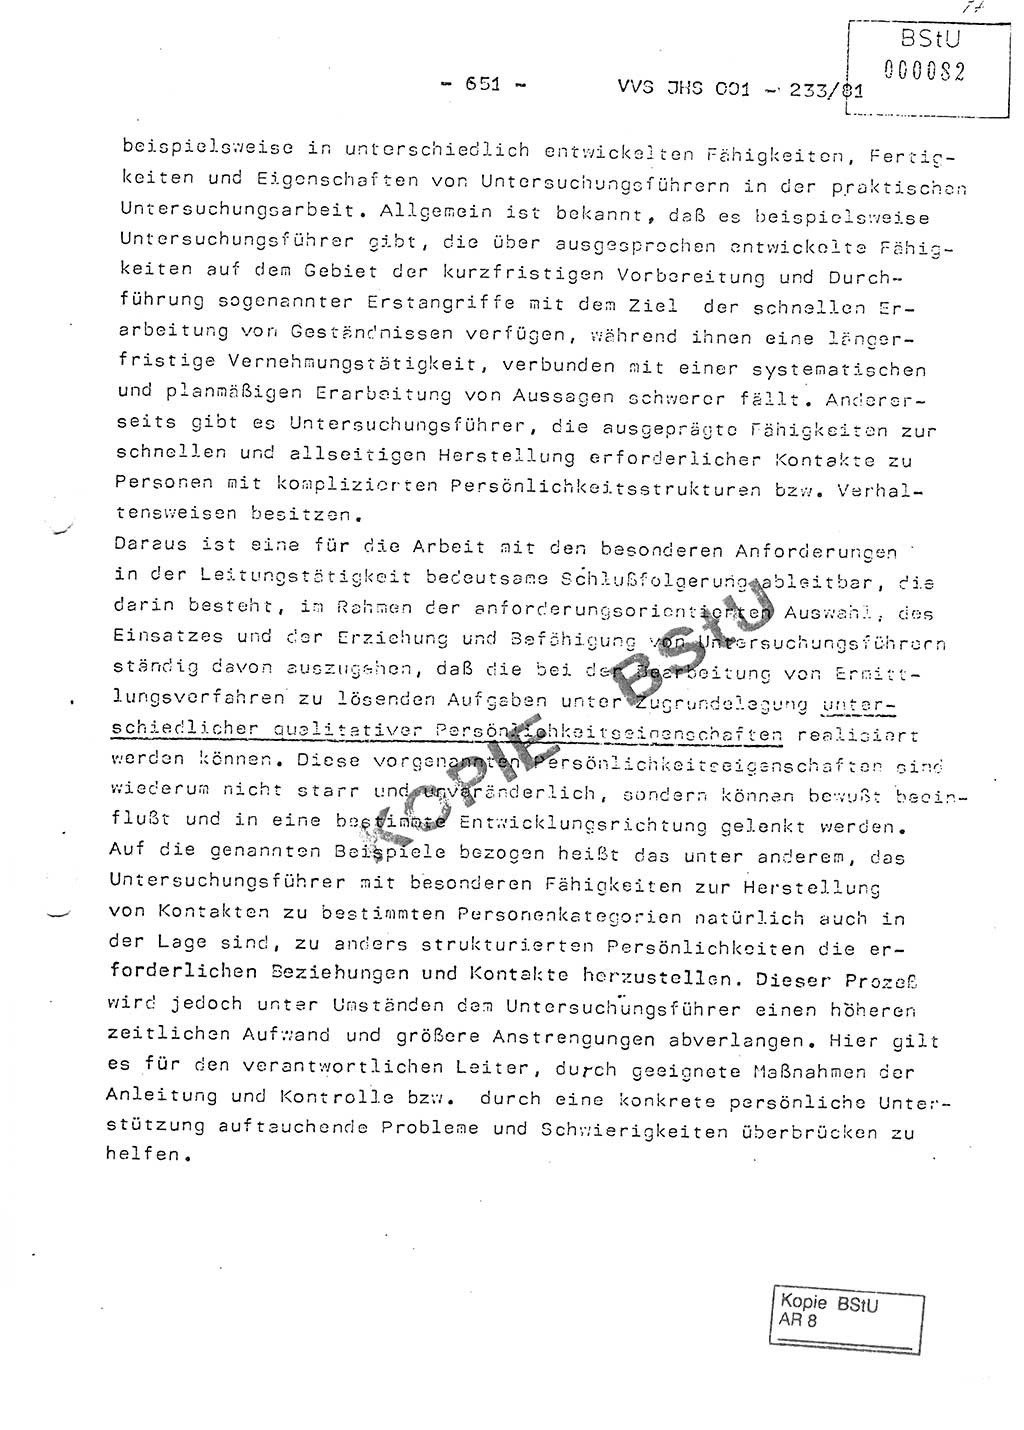 Dissertation Oberstleutnant Horst Zank (JHS), Oberstleutnant Dr. Karl-Heinz Knoblauch (JHS), Oberstleutnant Gustav-Adolf Kowalewski (HA Ⅸ), Oberstleutnant Wolfgang Plötner (HA Ⅸ), Ministerium für Staatssicherheit (MfS) [Deutsche Demokratische Republik (DDR)], Juristische Hochschule (JHS), Vertrauliche Verschlußsache (VVS) o001-233/81, Potsdam 1981, Blatt 651 (Diss. MfS DDR JHS VVS o001-233/81 1981, Bl. 651)